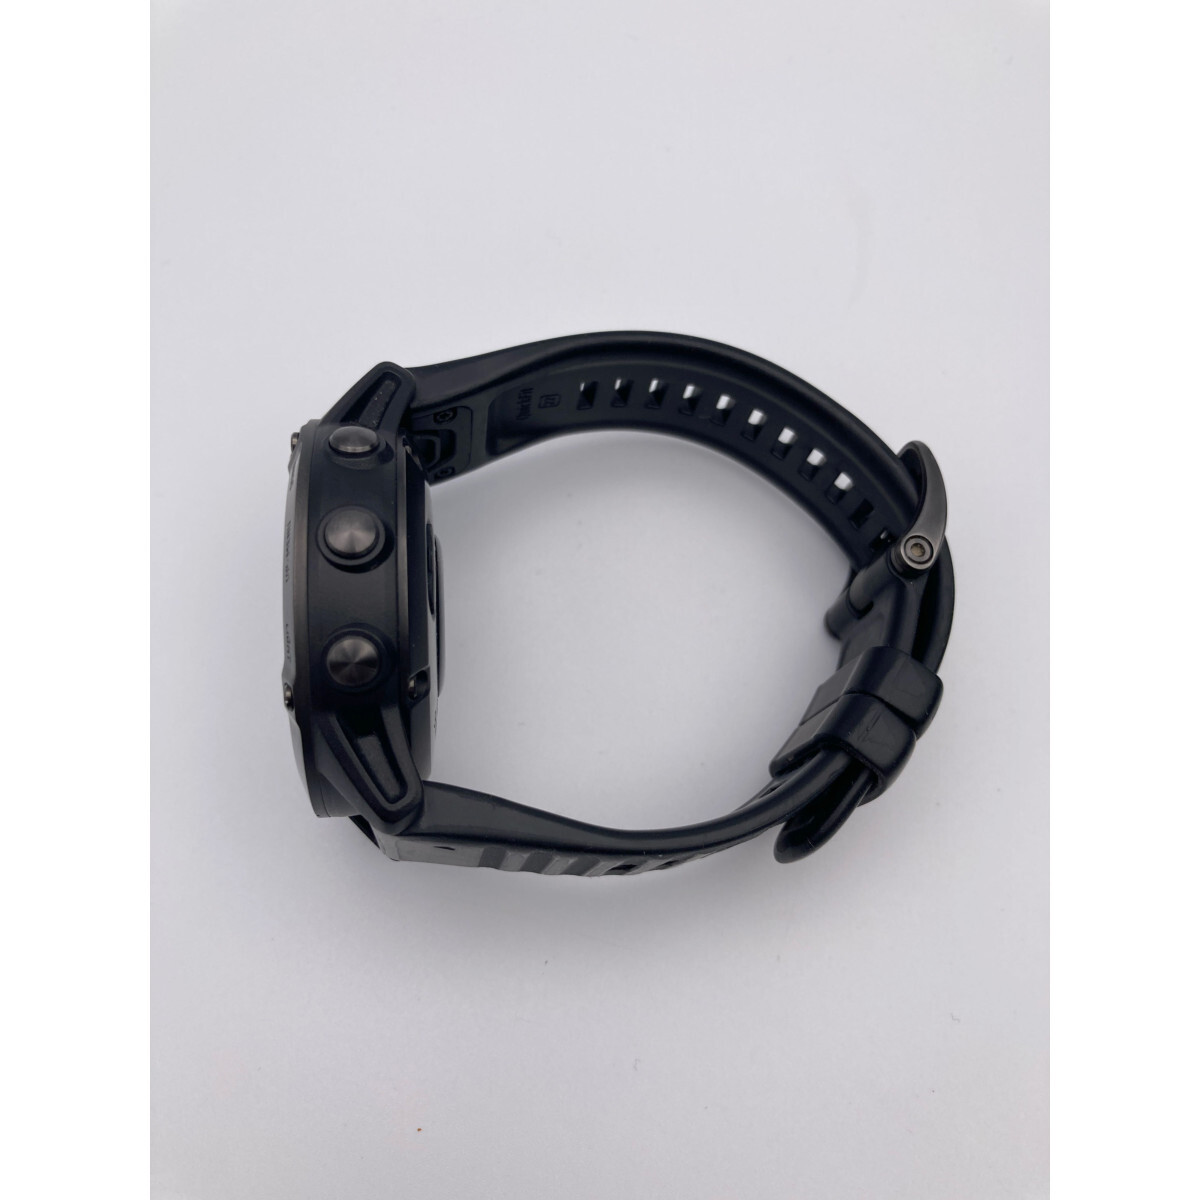 【美品】GARMIN ガーミン 010-02158-33 FENIX6 マルチスポーツ型GPS スマートウォッチ 腕時計 ブラック メンズ_画像3